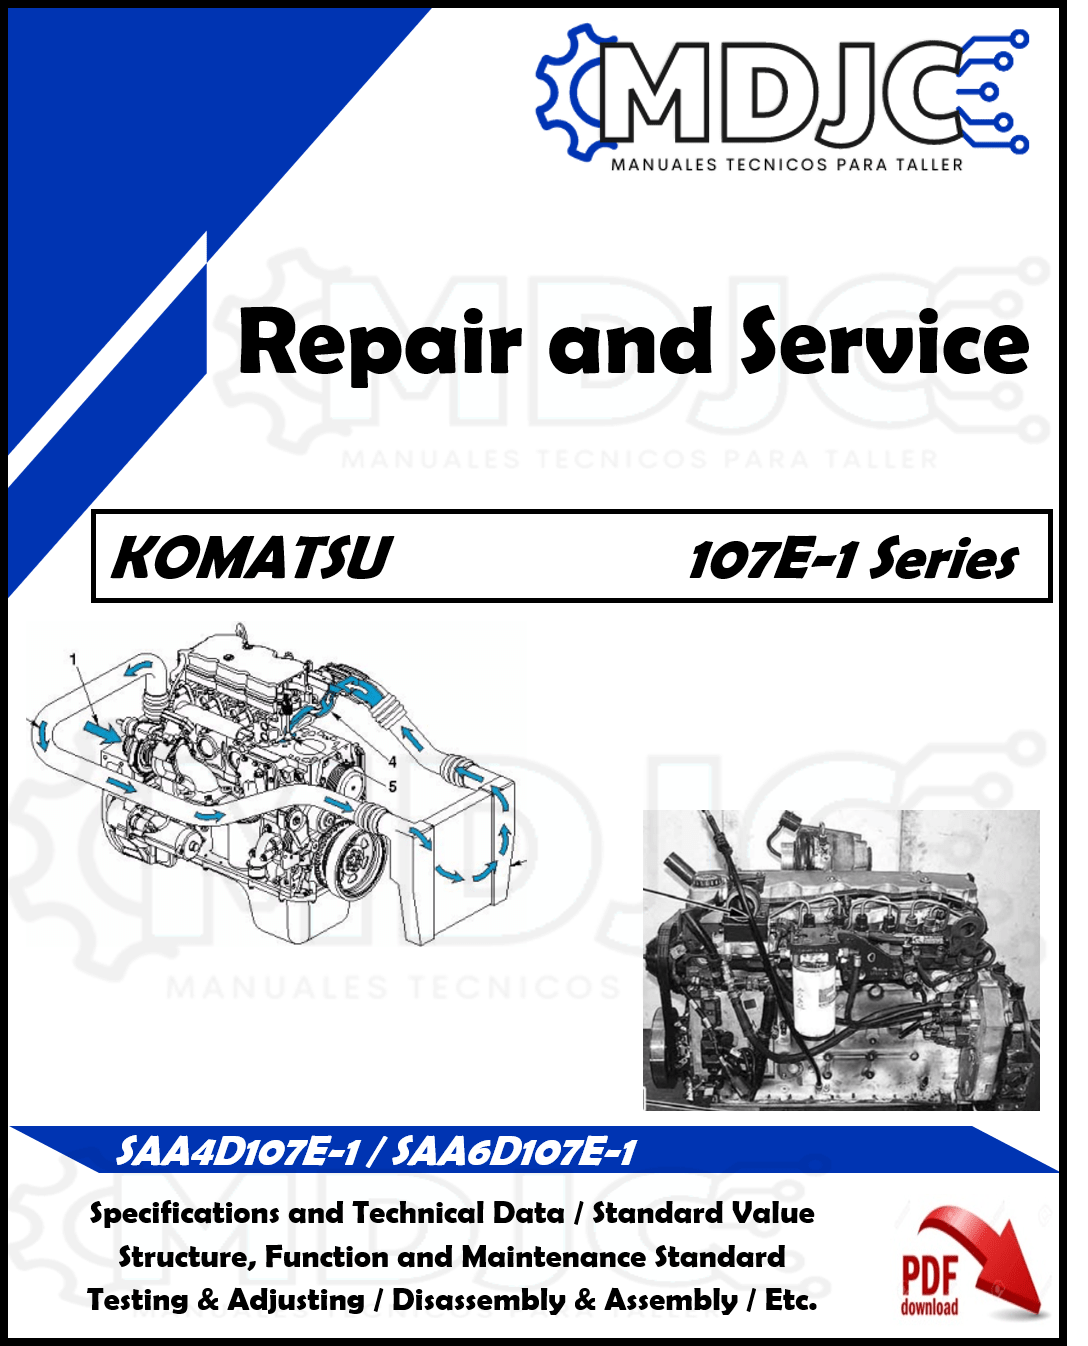 Manual de Taller (Reparación y Servicio) Motor Komatsu 107E-1 Series (SAA4D107E-1 / SAA6D107E-1)